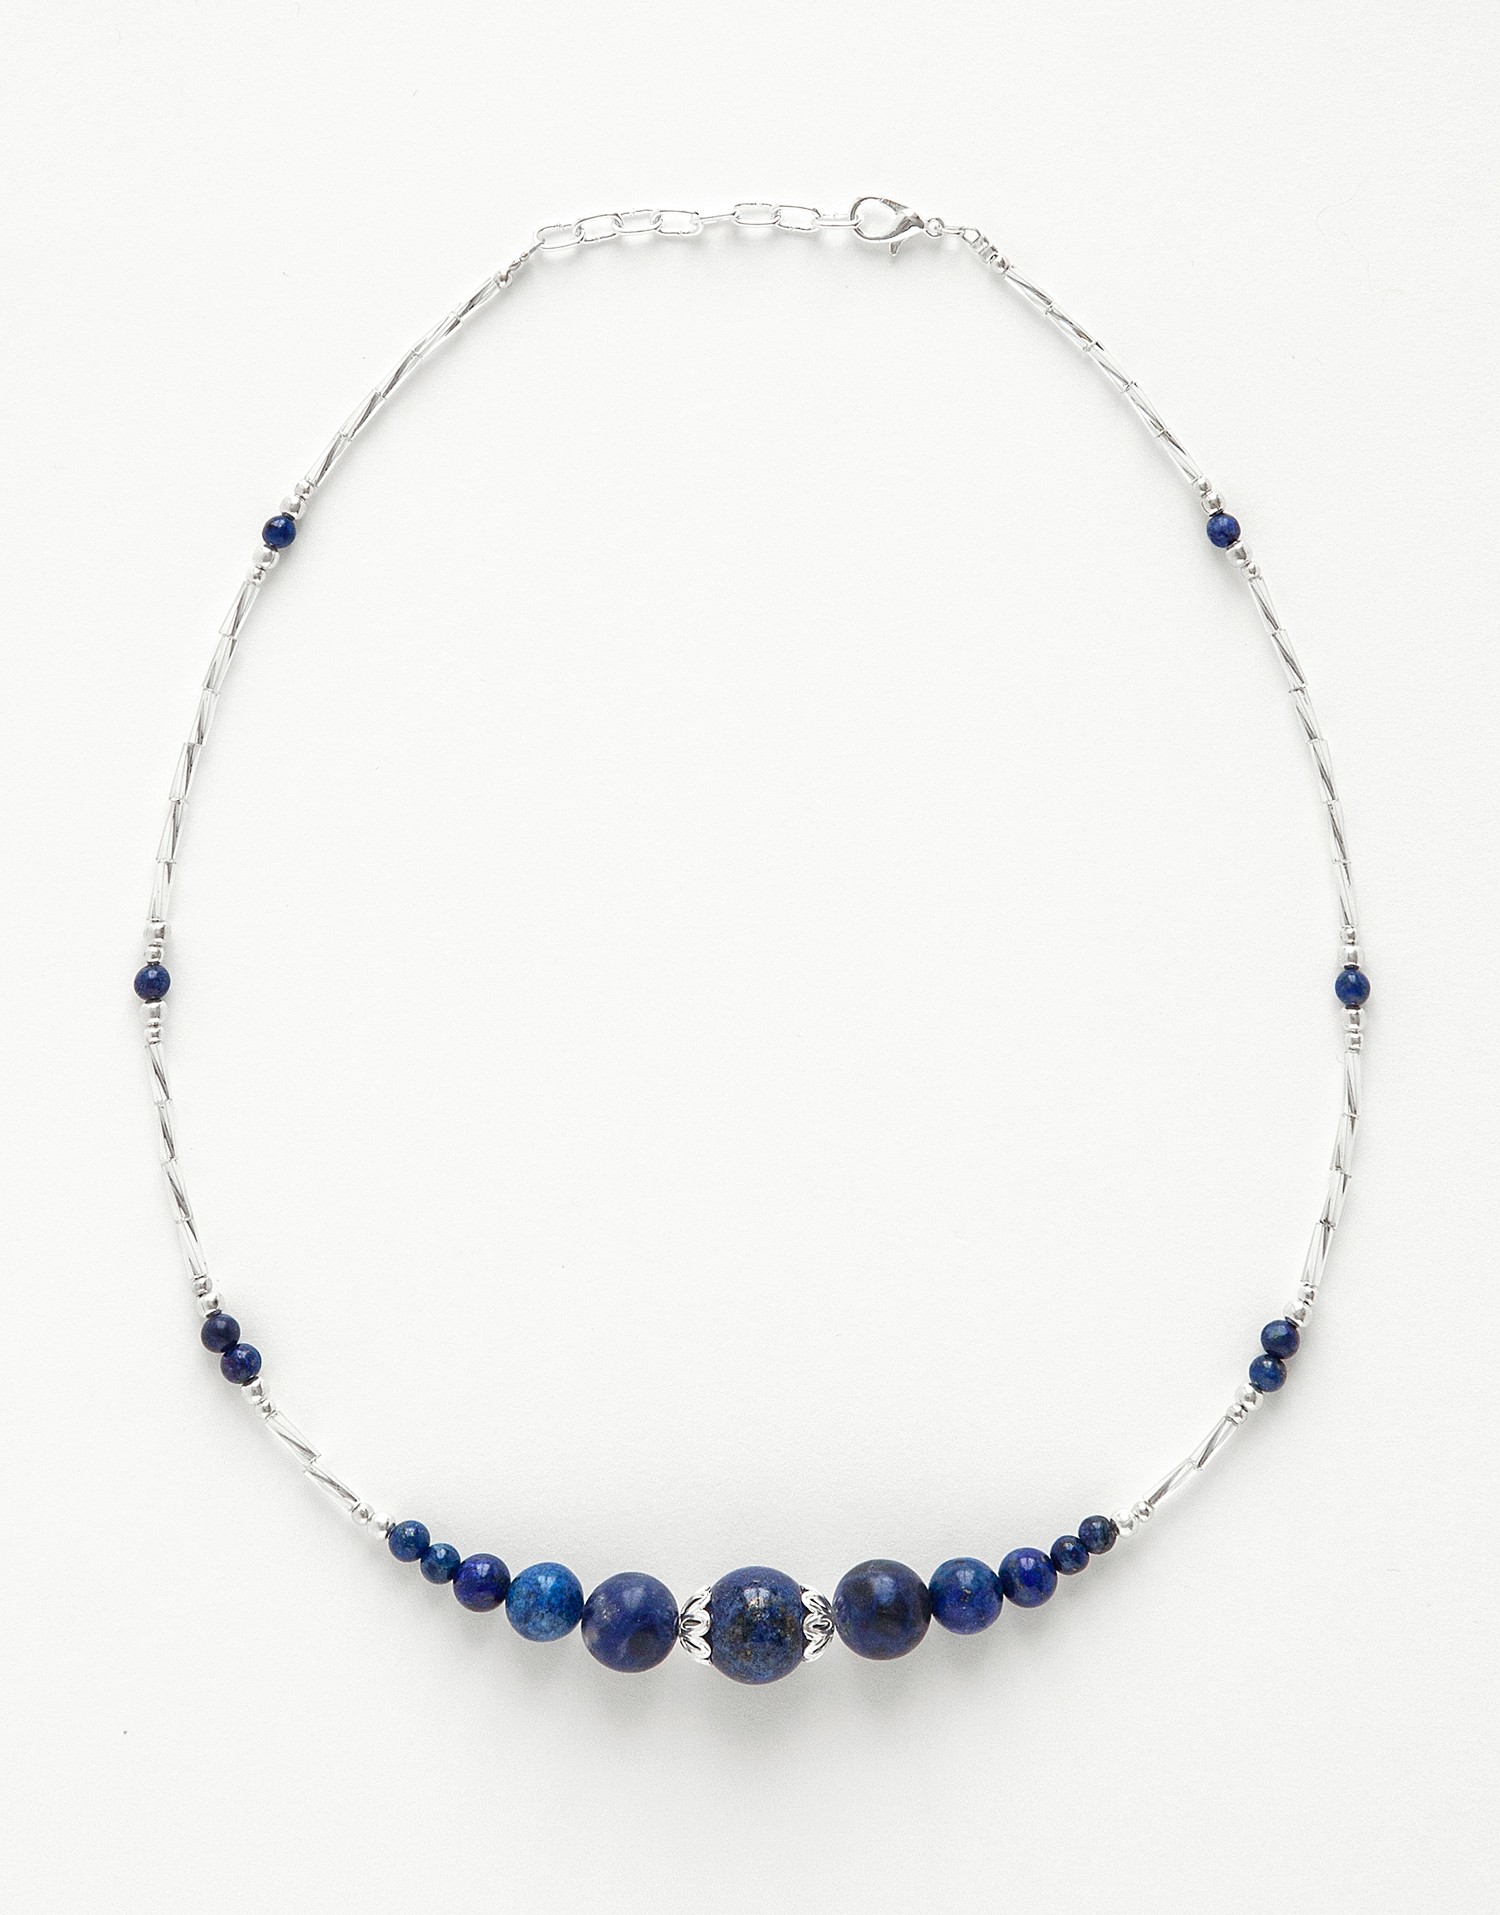 Collier Thalia Lapis-Lazuli